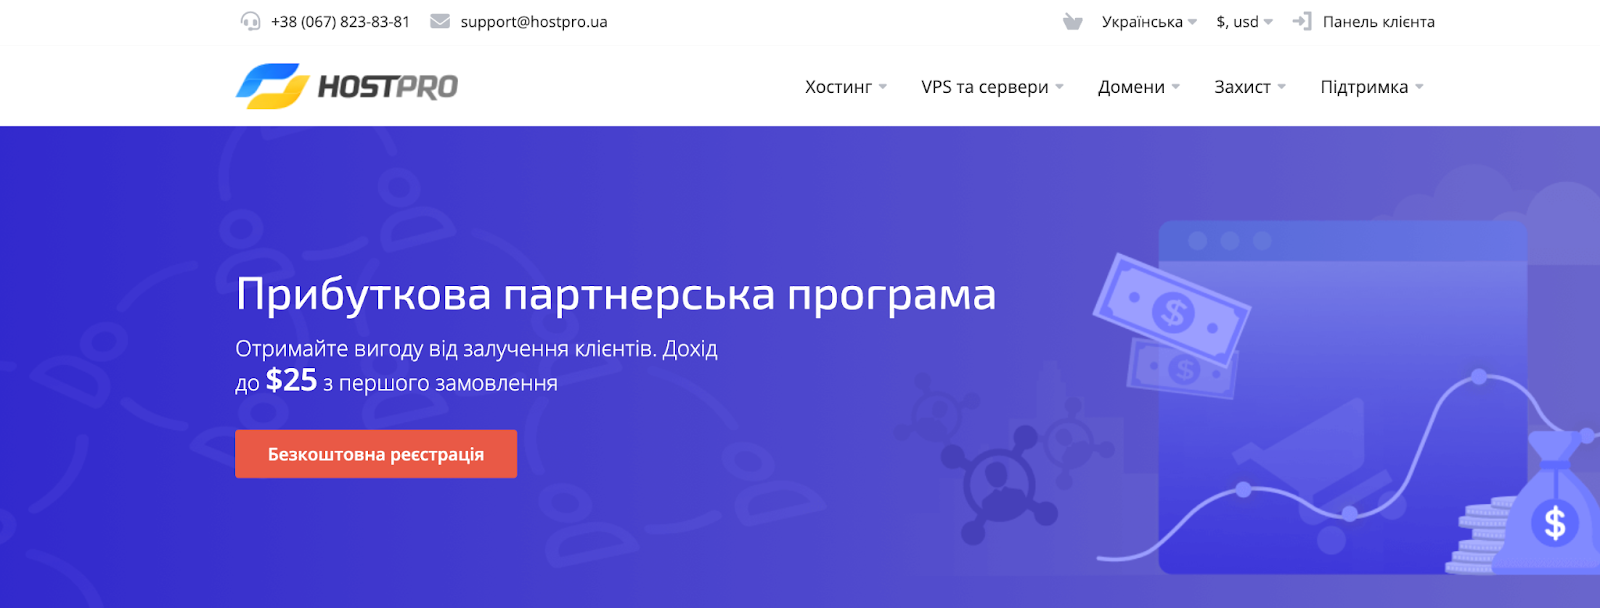 Партнерська програма від українського хостера | HostPro Wiki